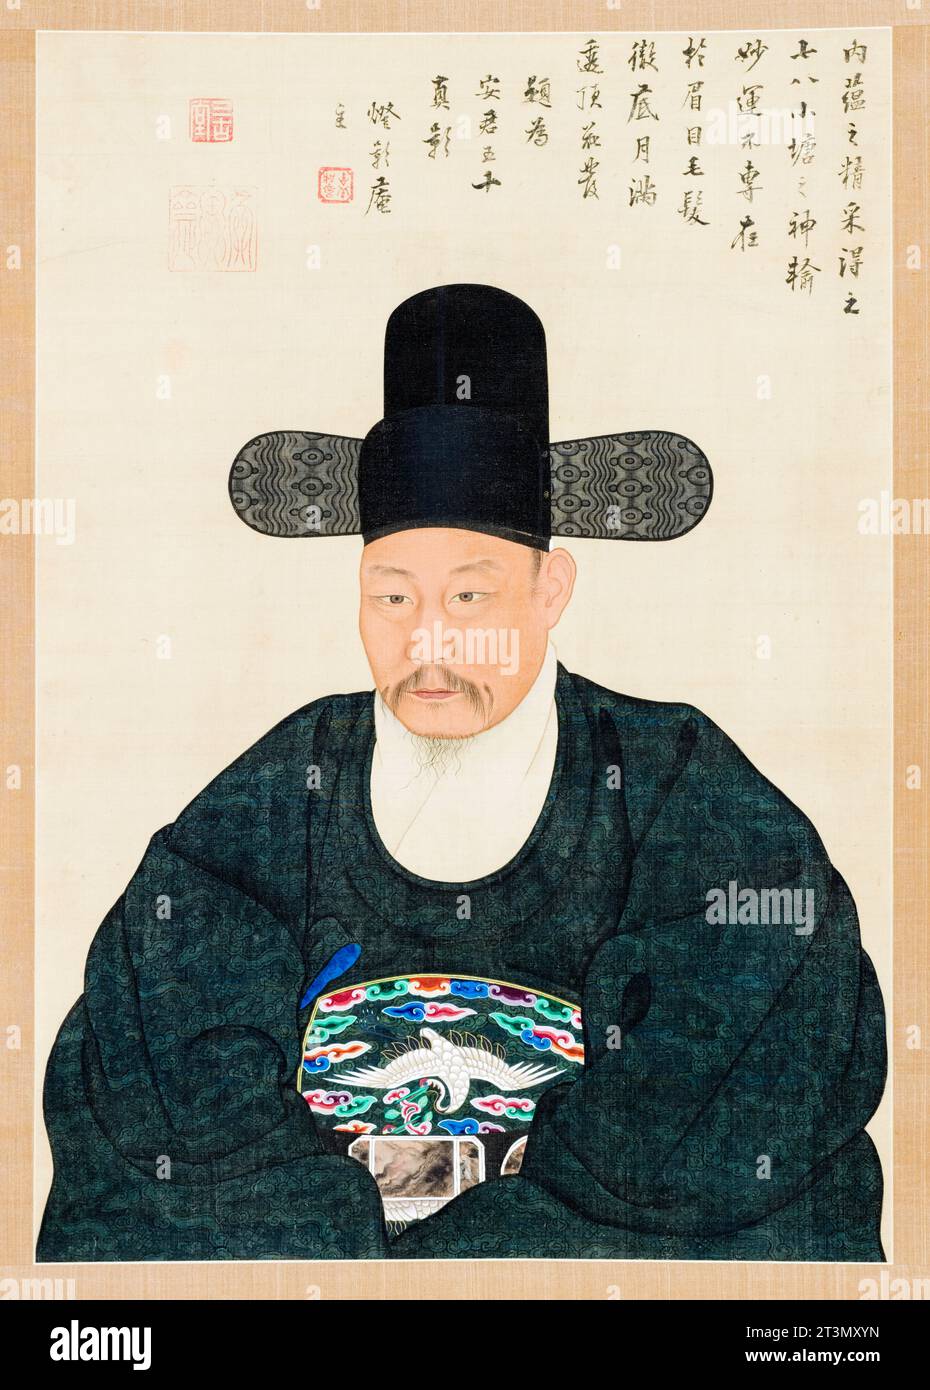 Koreanische Kunst aus dem 19. Jahrhundert, Porträt des Gelehrten-Beamten Ahn in seinen 50er Jahren, hängende Rolle in Tinte und Farbe auf Seide von Yi Chaegwan, vor 1837 Stockfoto